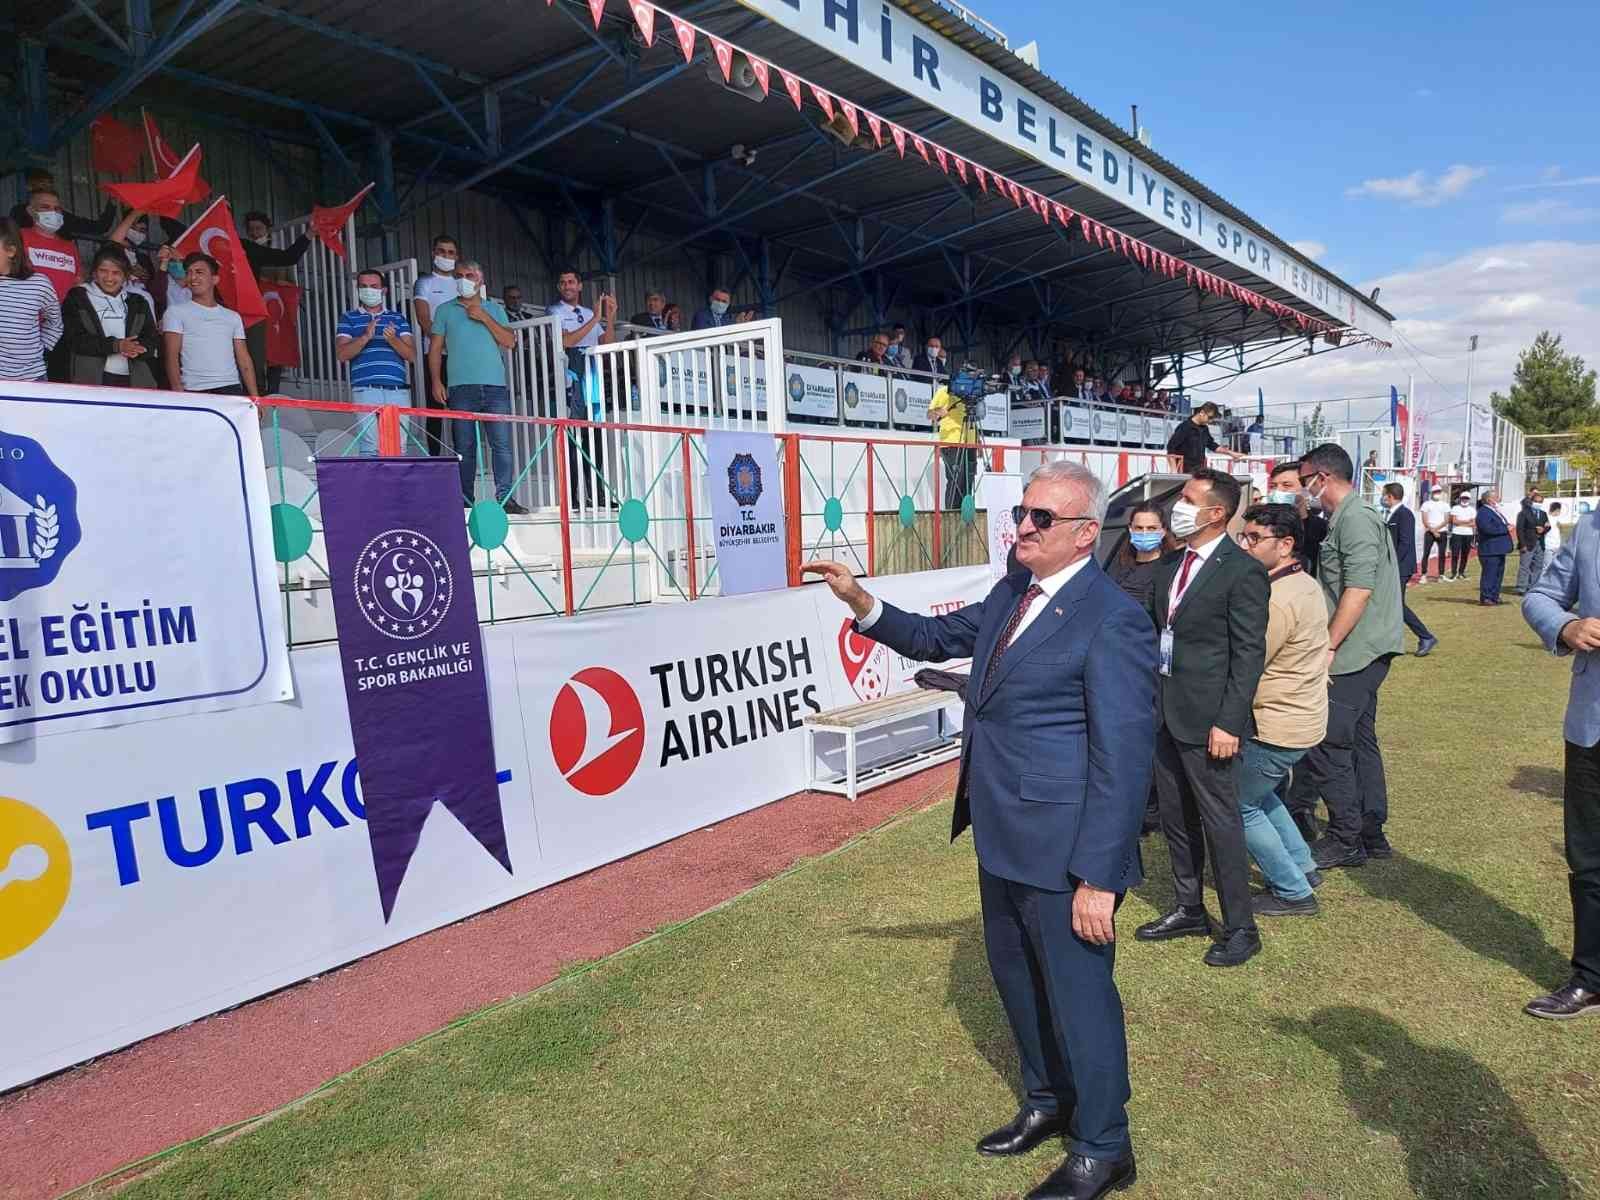 Ampute Futbol 2021 Türkiye Kupası müsabakaları Diyarbakır’da başladı #diyarbakir